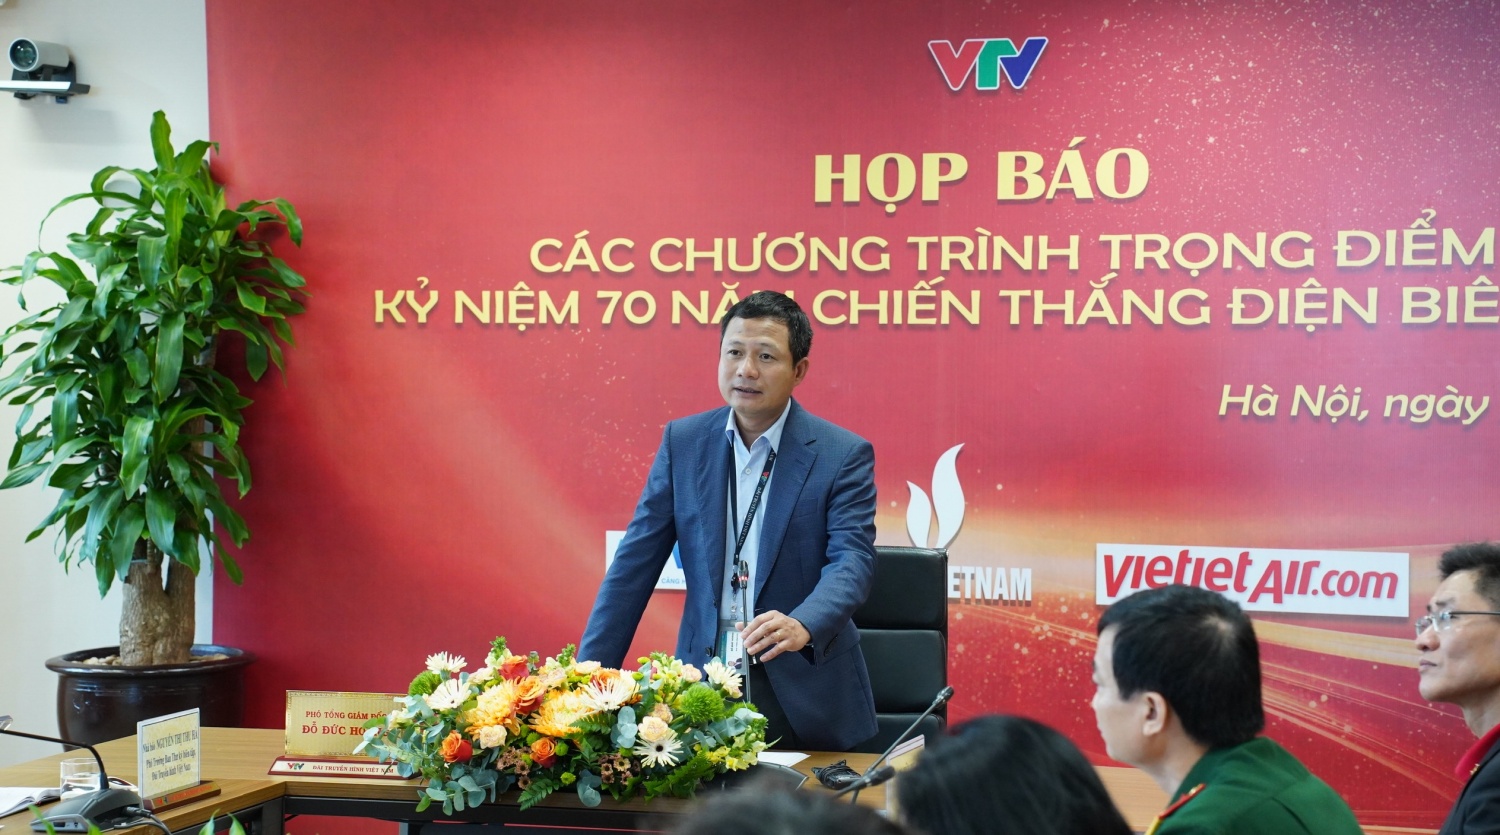 Petrovietnam đồng hành hỗ trợ VTV thực hiện nhiều chương trình trọng điểm kỷ niệm 70 năm Chiến thắng Điện Biên Phủ